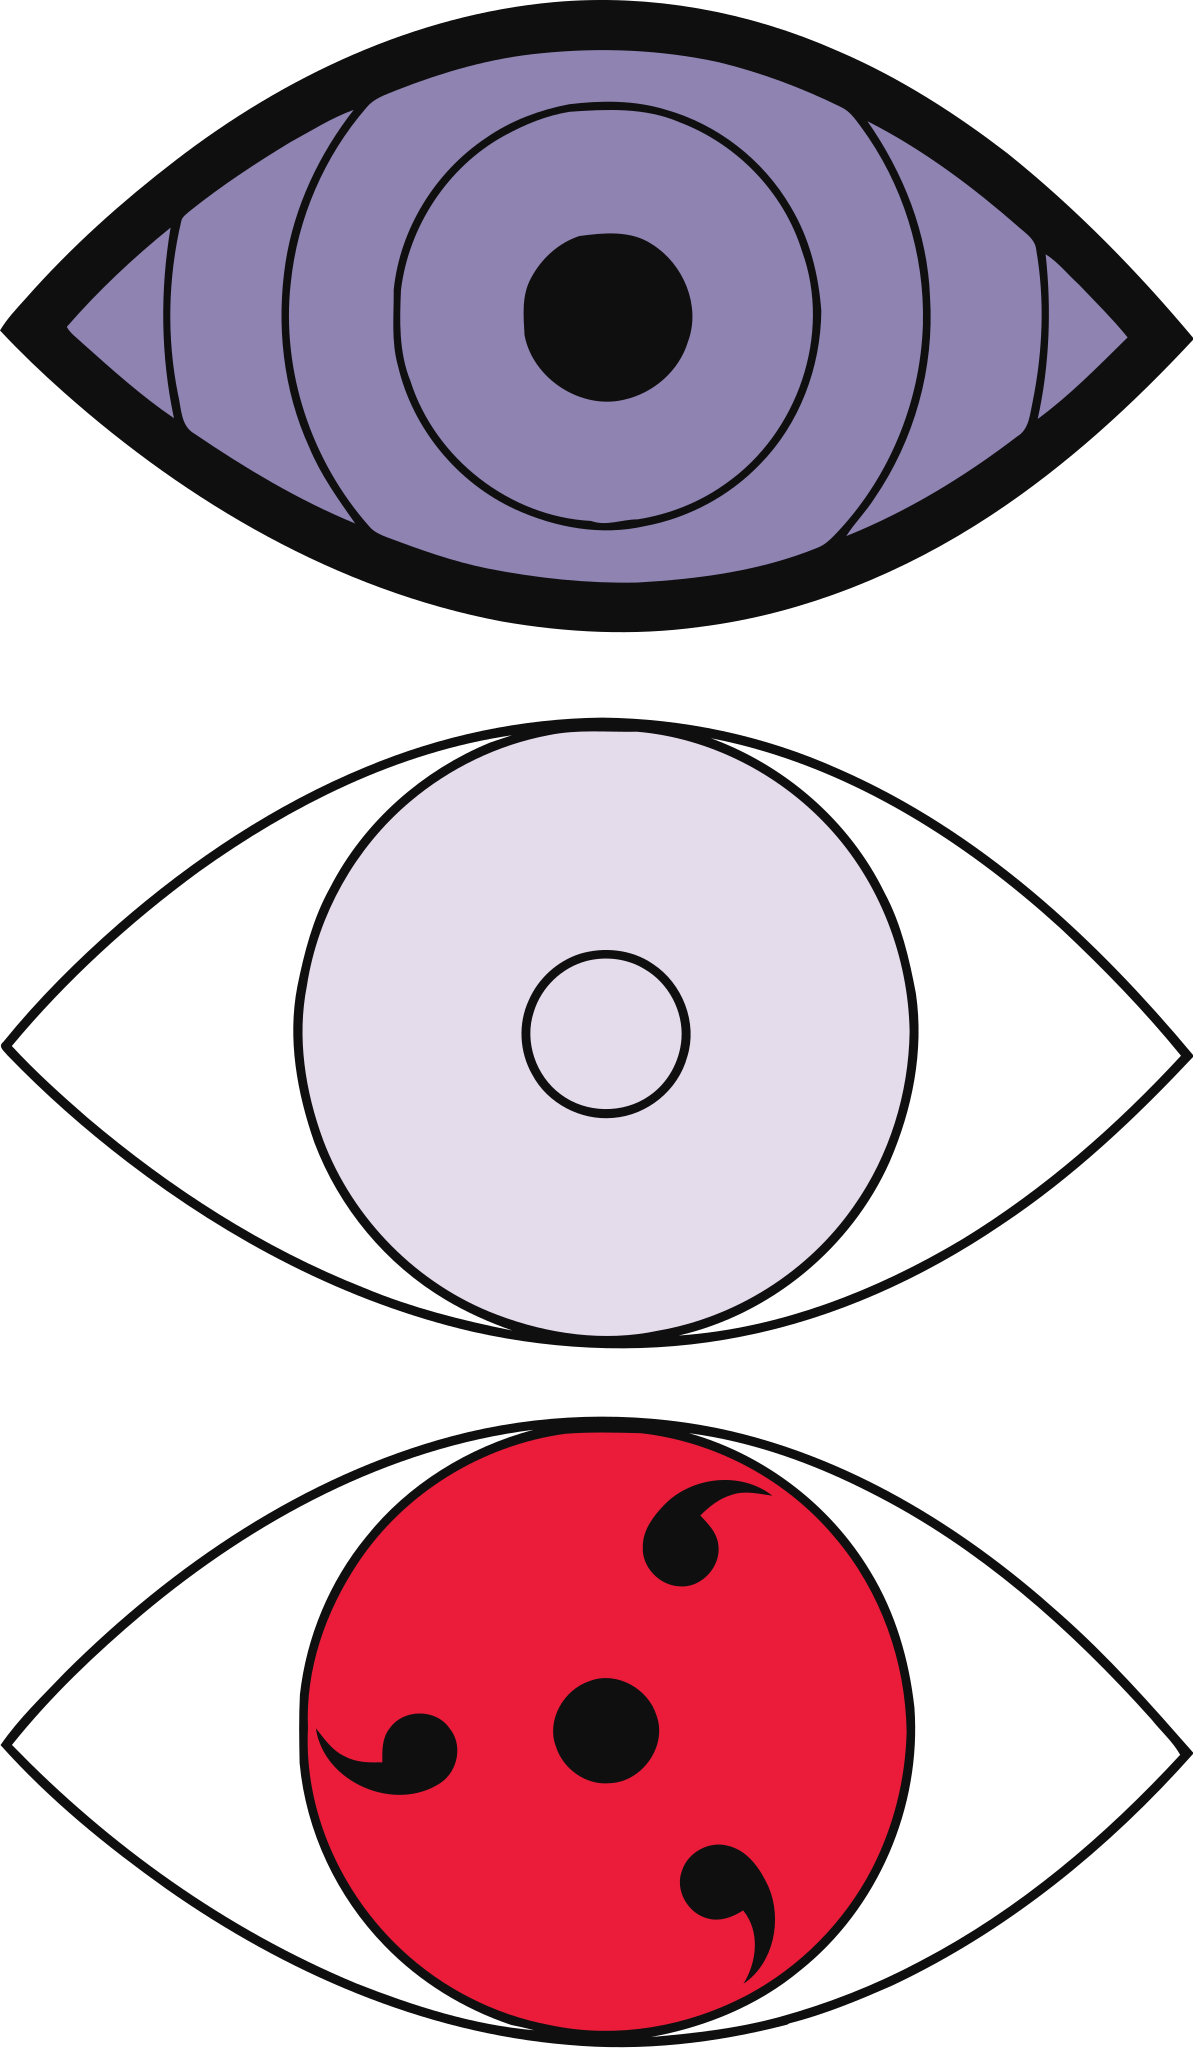 Naruto Eye Kekkei Genkai (Dojutsu) Flashcards